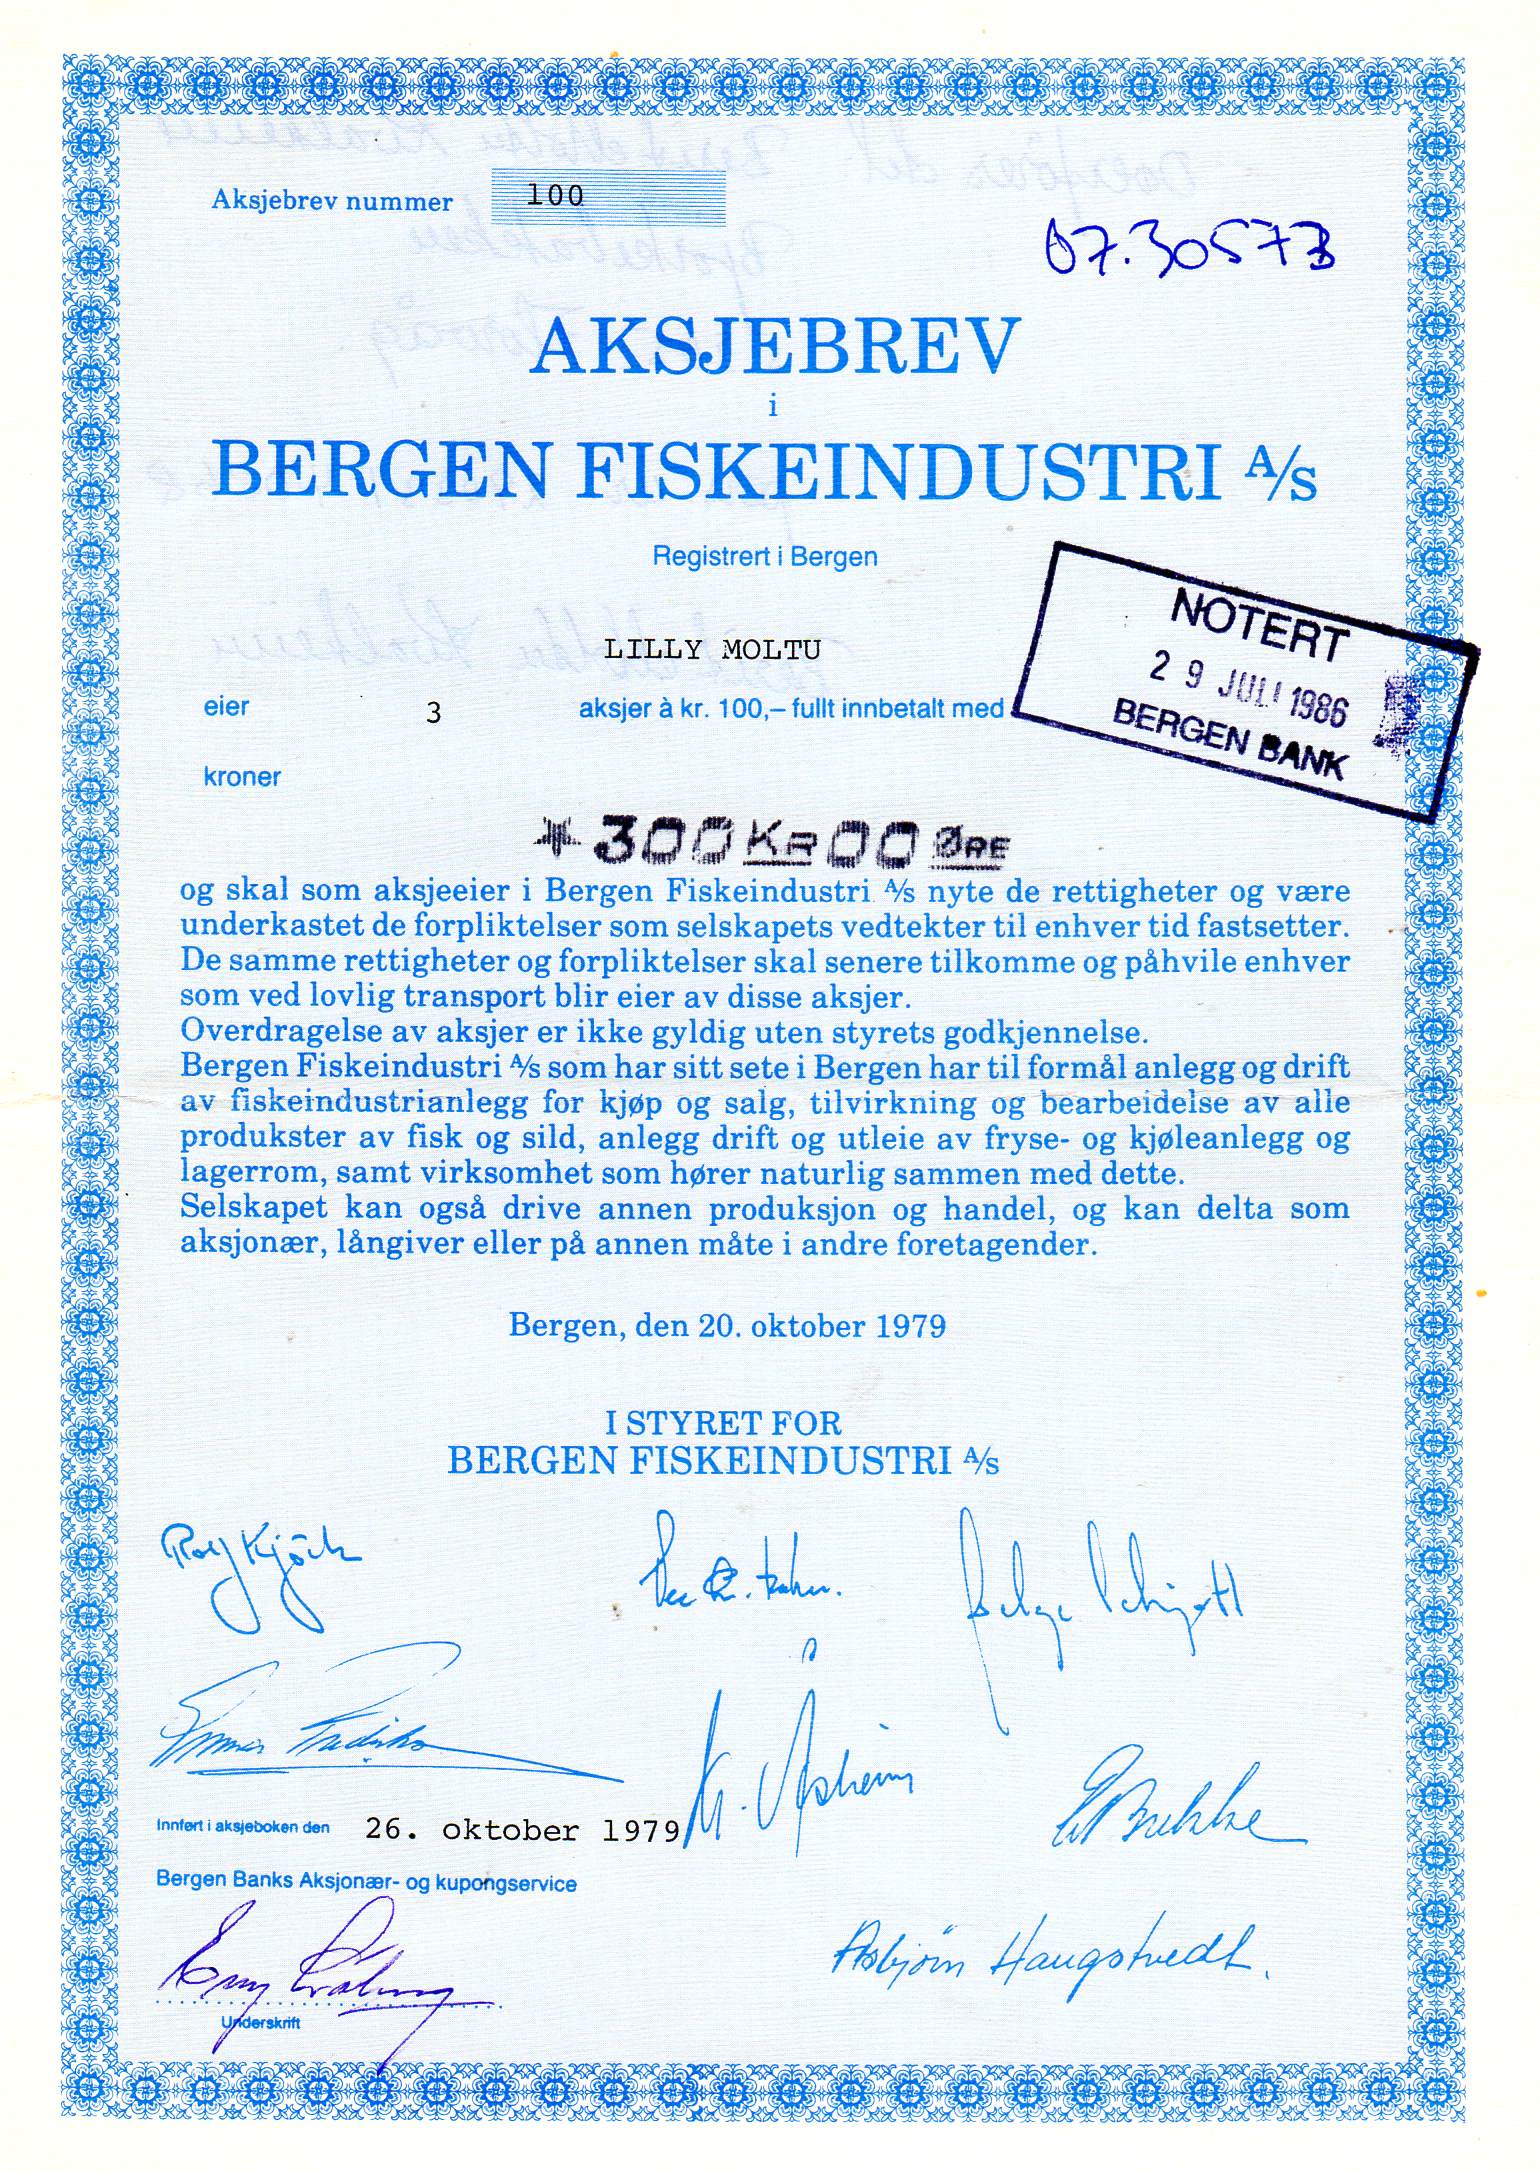 Bergen fiskeindustri Bergen 1979 kr 100 nr 100/163/309 pris pr stk